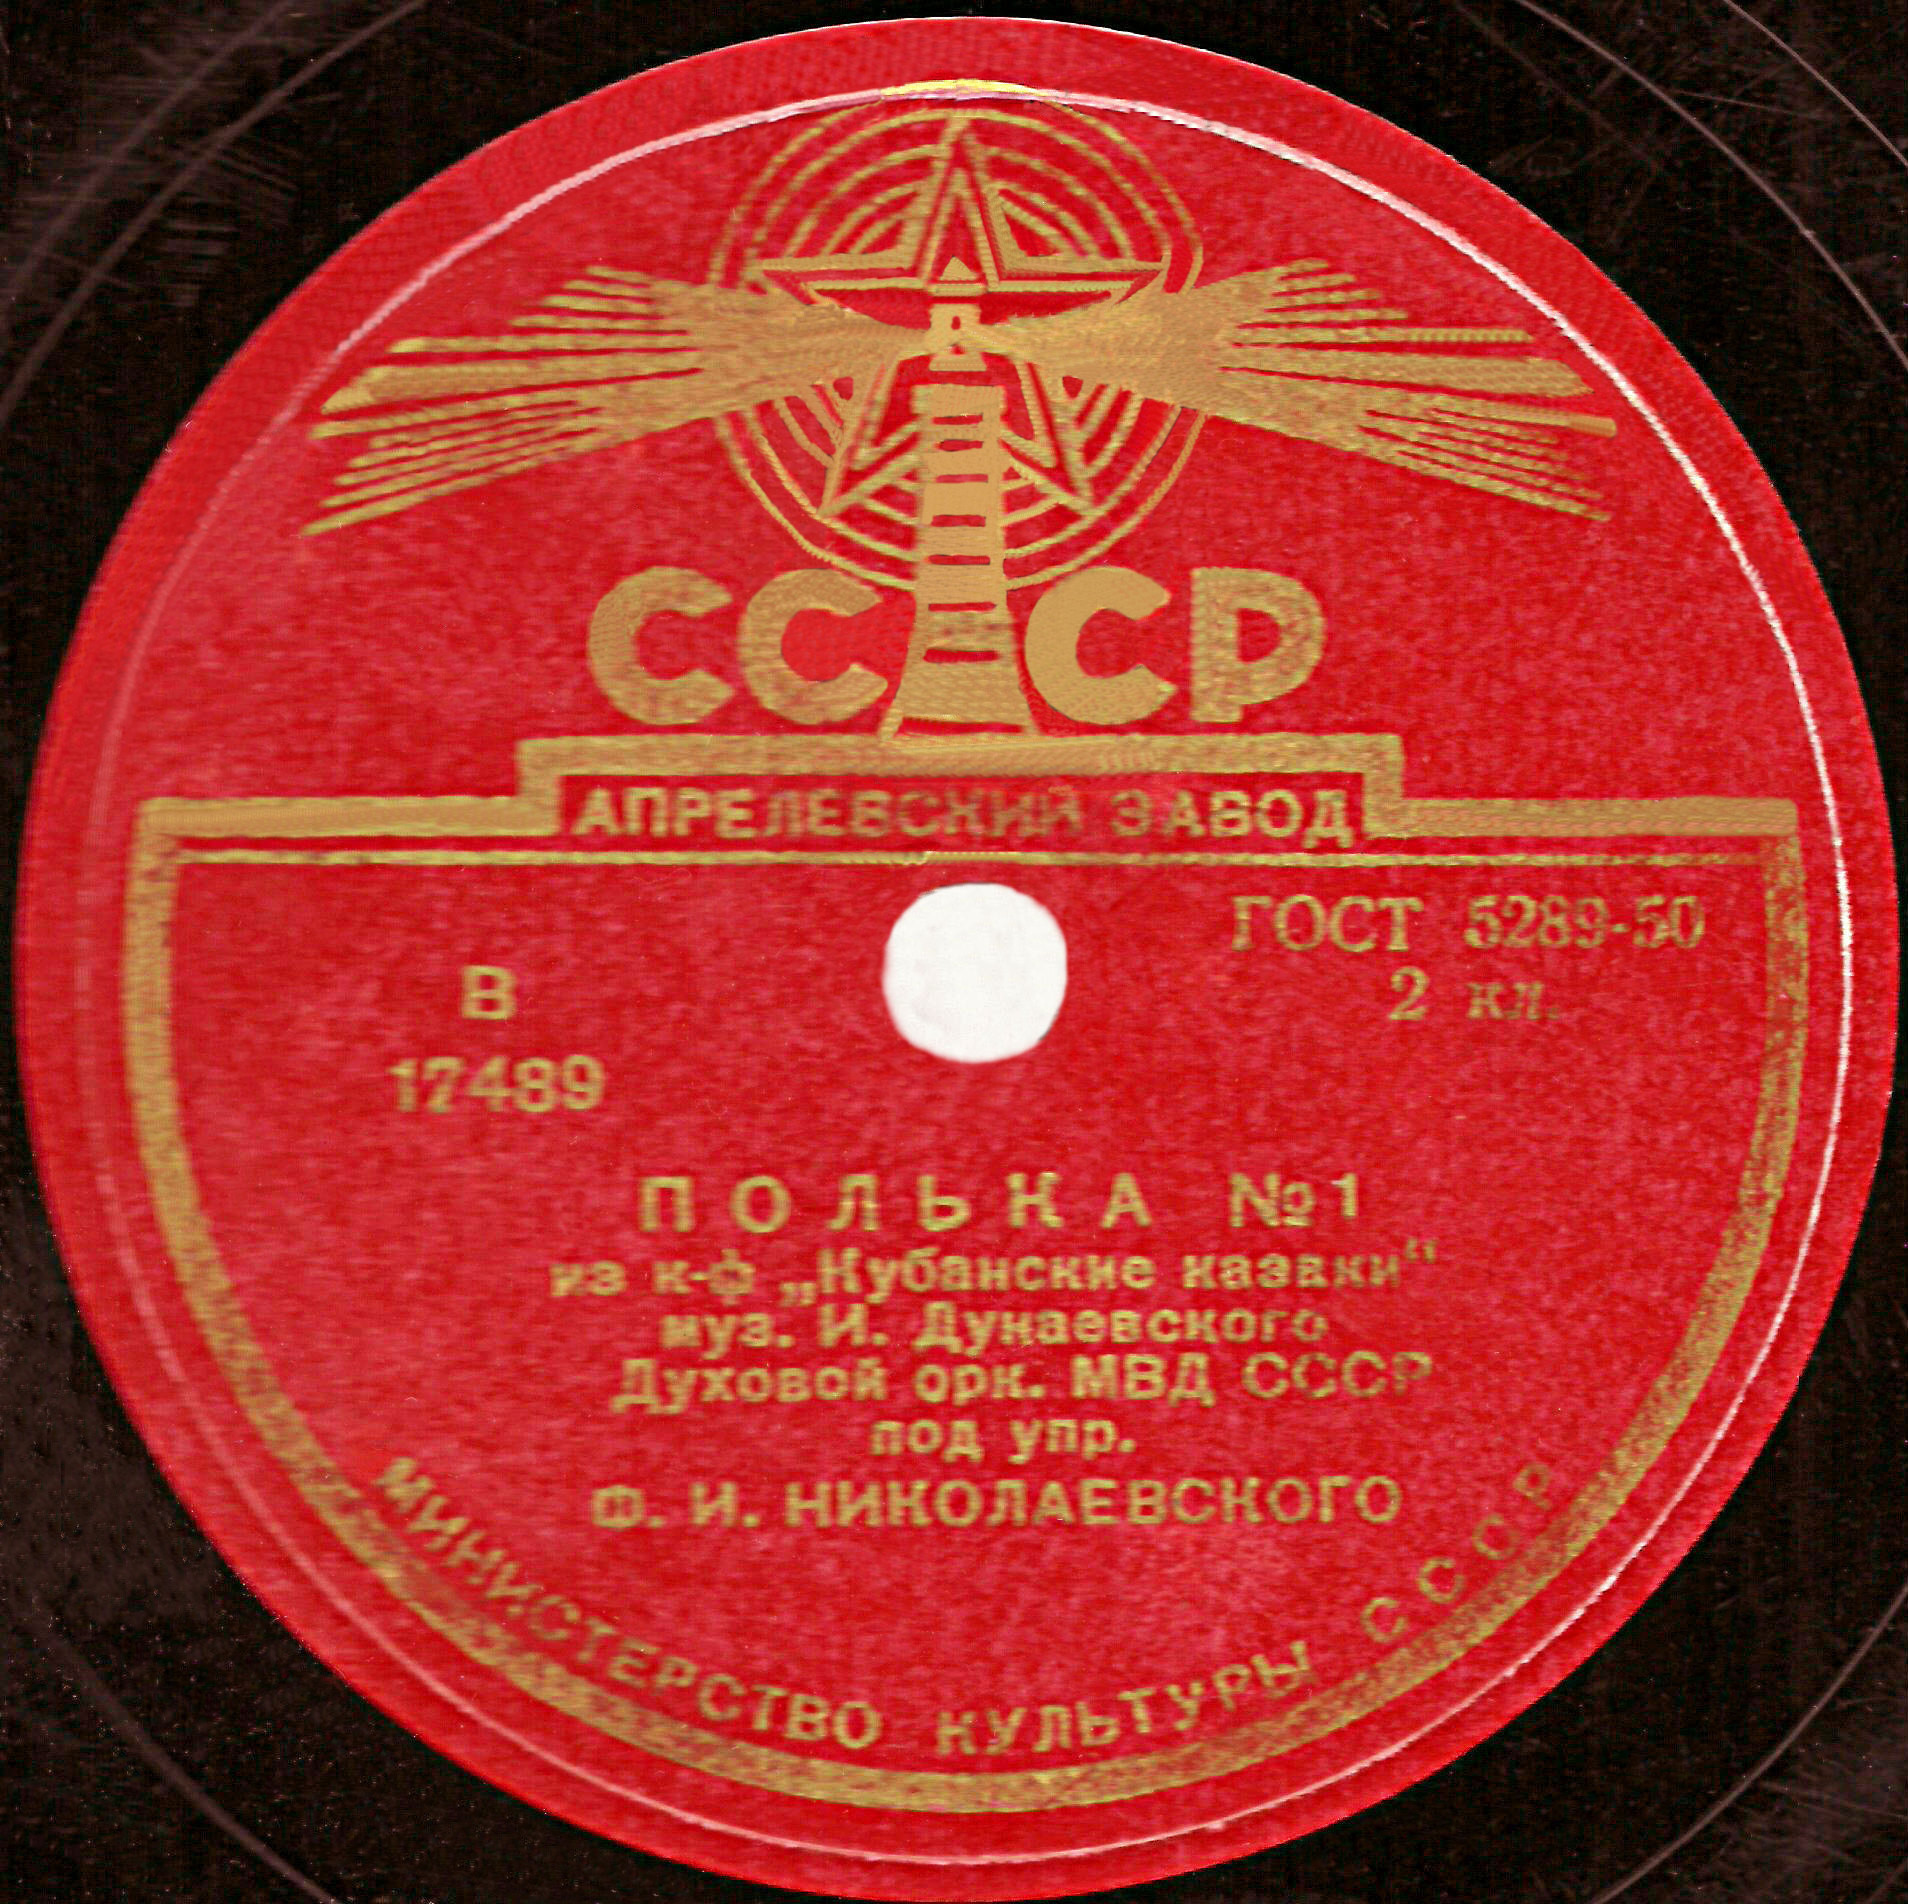 Духовой оркестр МВД СССР, дир. Ф. Николаевский